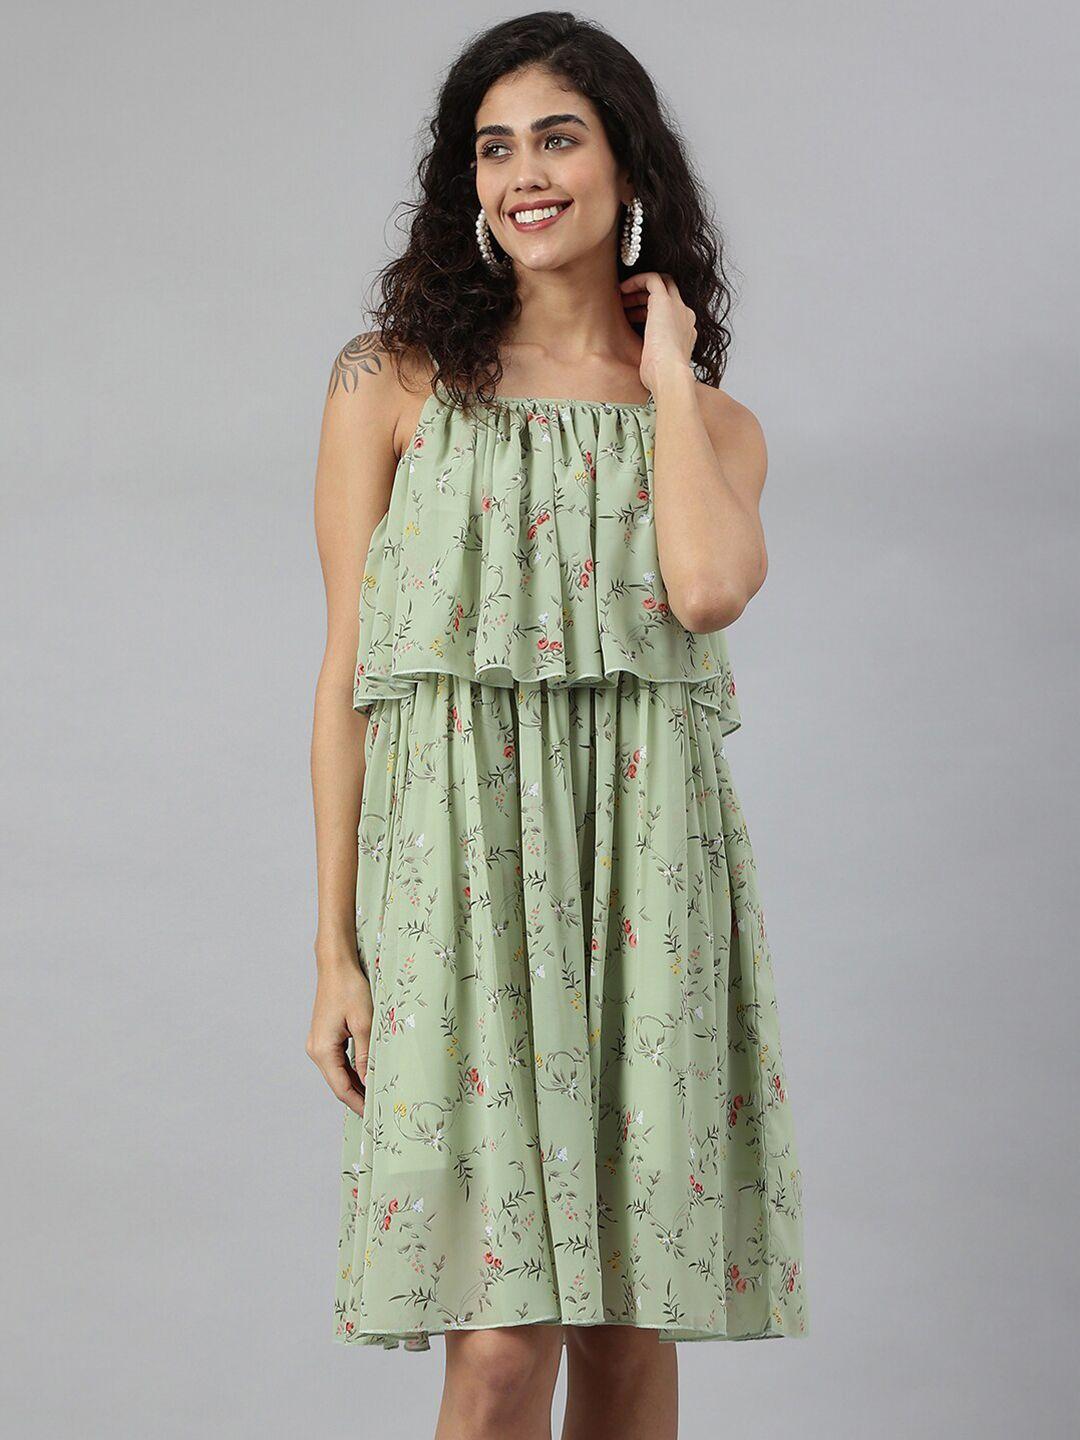 neemiya green floral print georgette dress